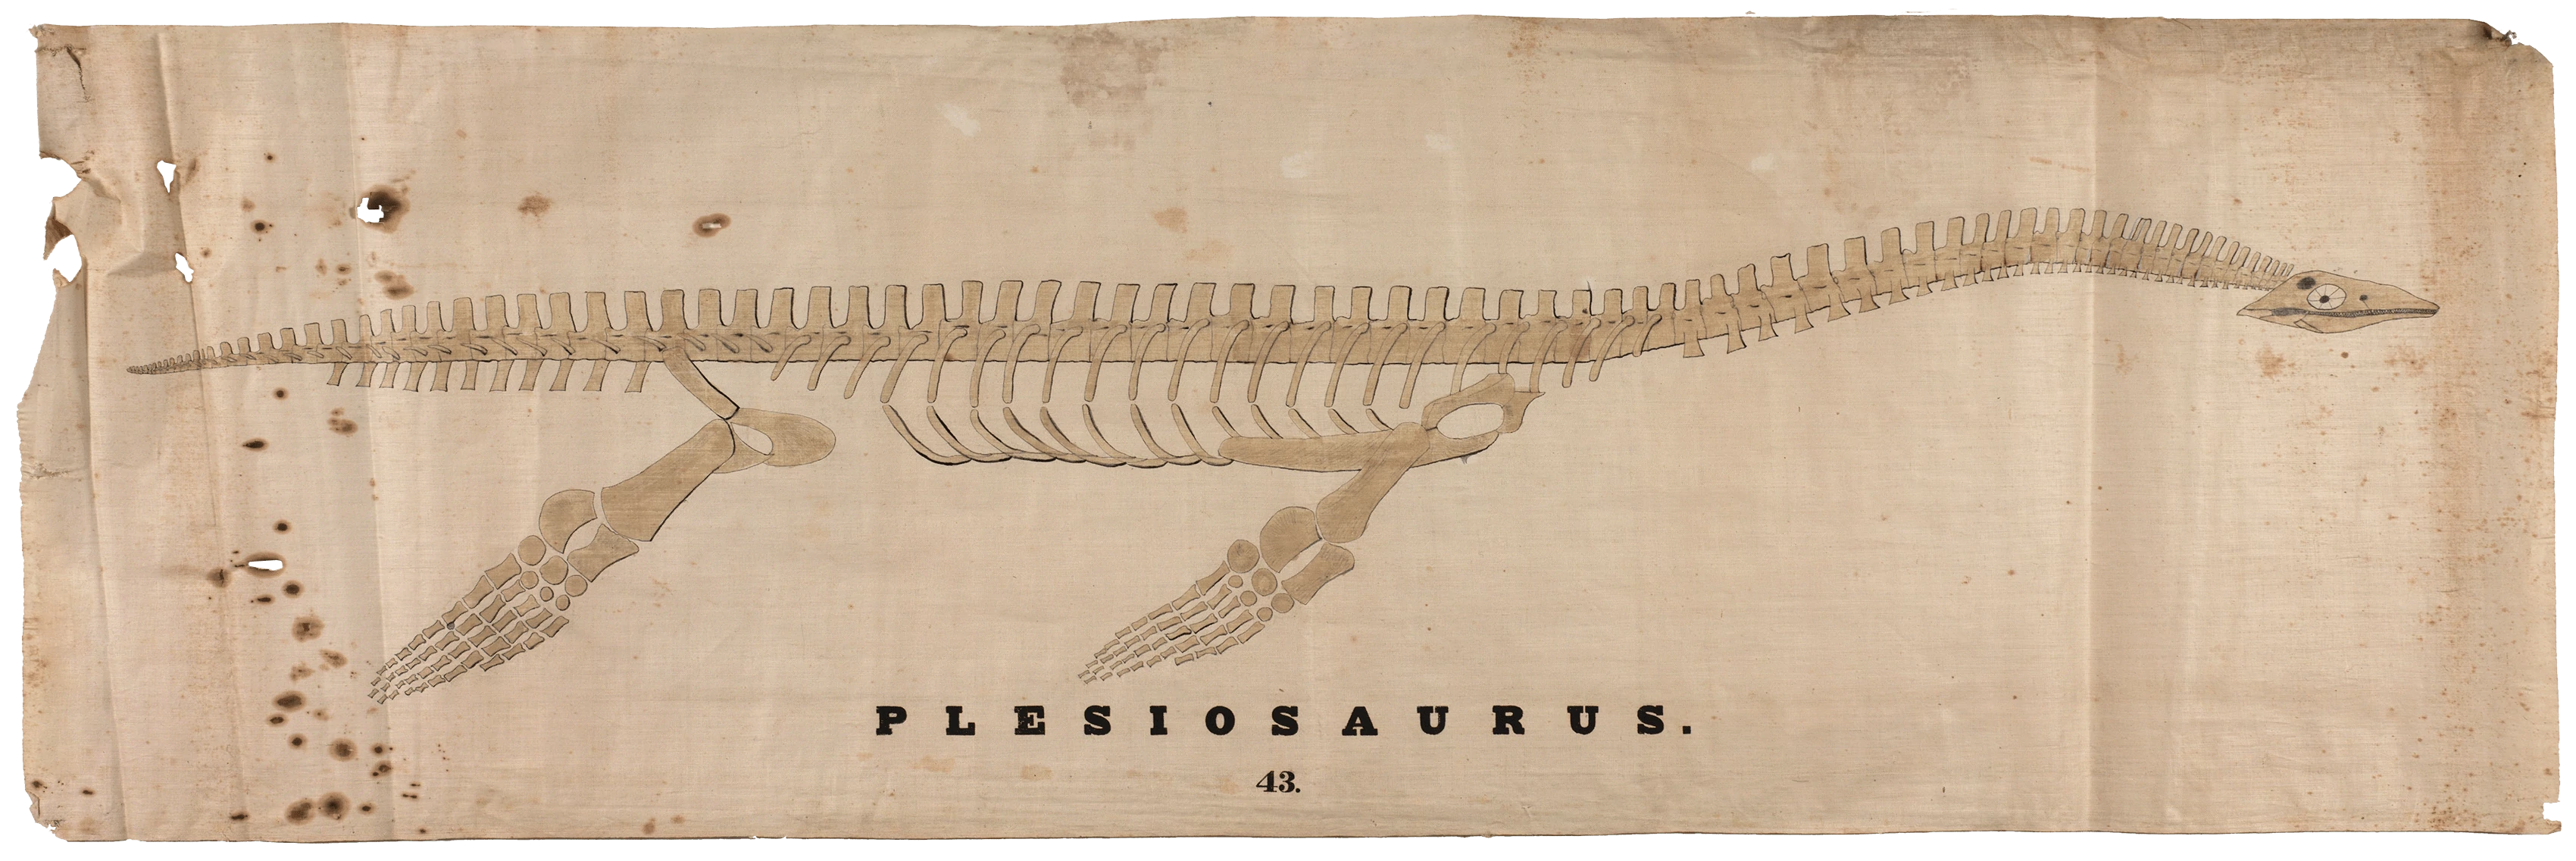 Plesiosaurus Skeleton, Orra White Hitchcock